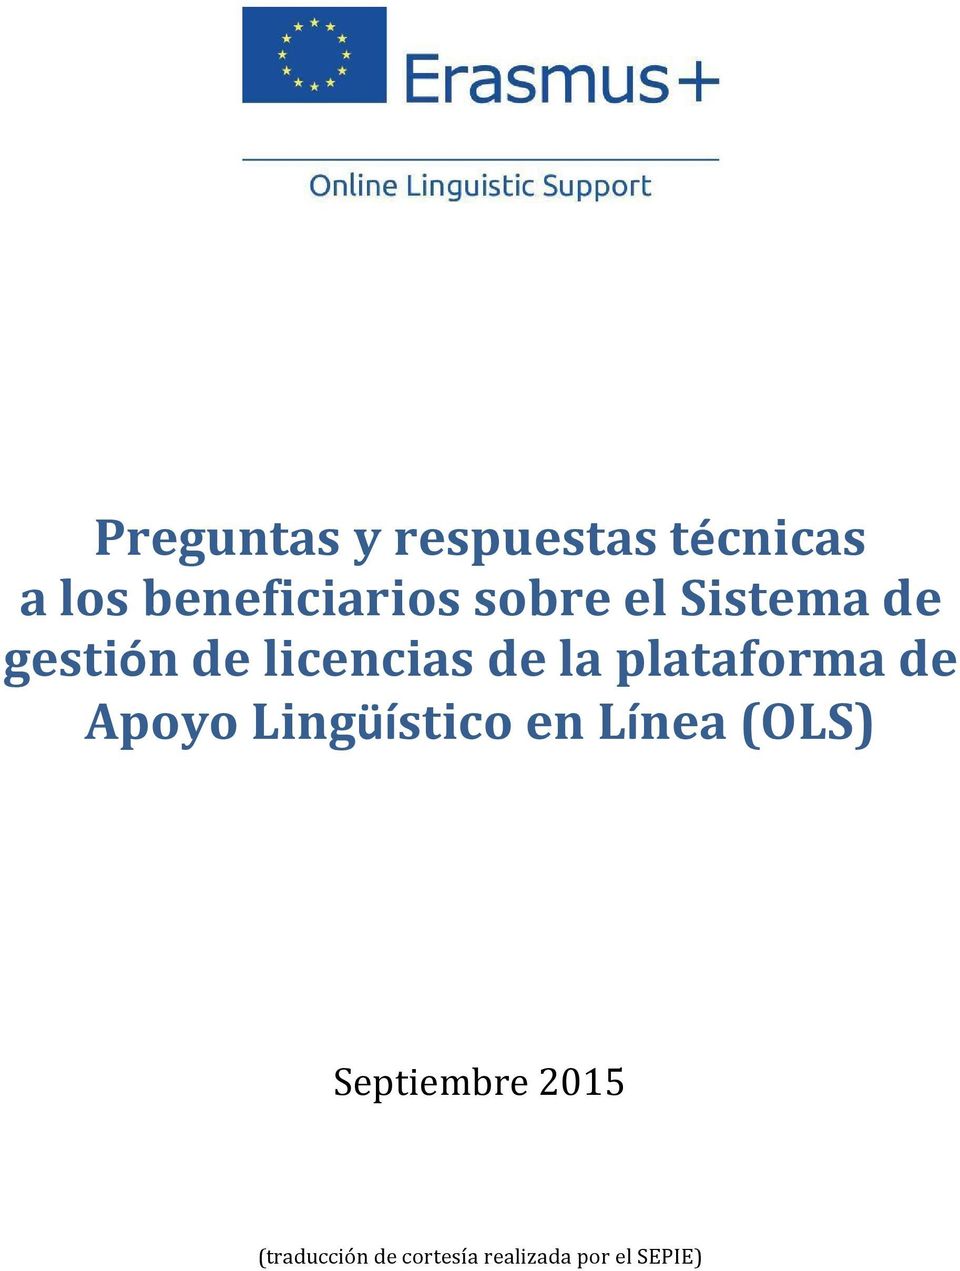 plataforma de Apoyo Lingüístico en Línea (OLS)